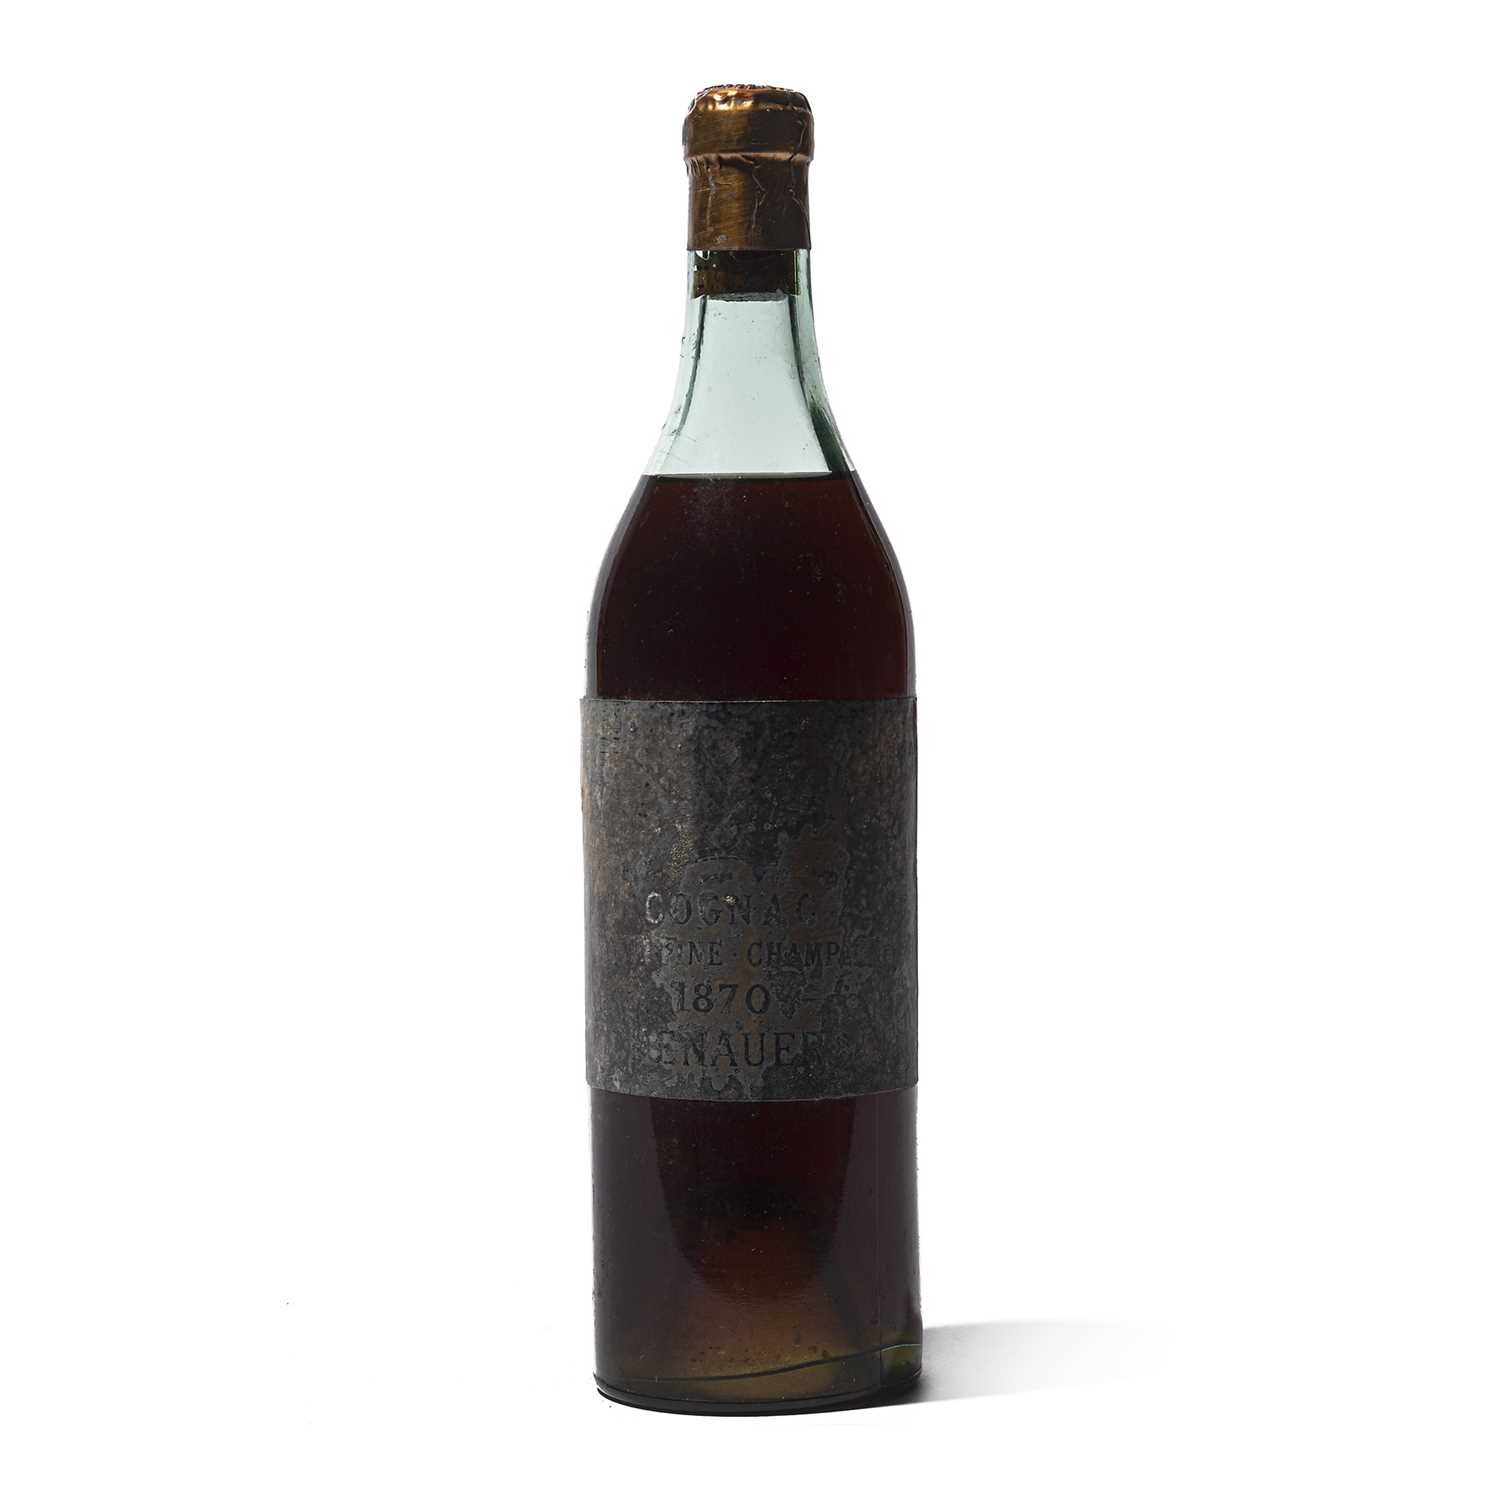 Lot 99 - 1 bottle 1870 Eschenauer Grande Champagne Cognac